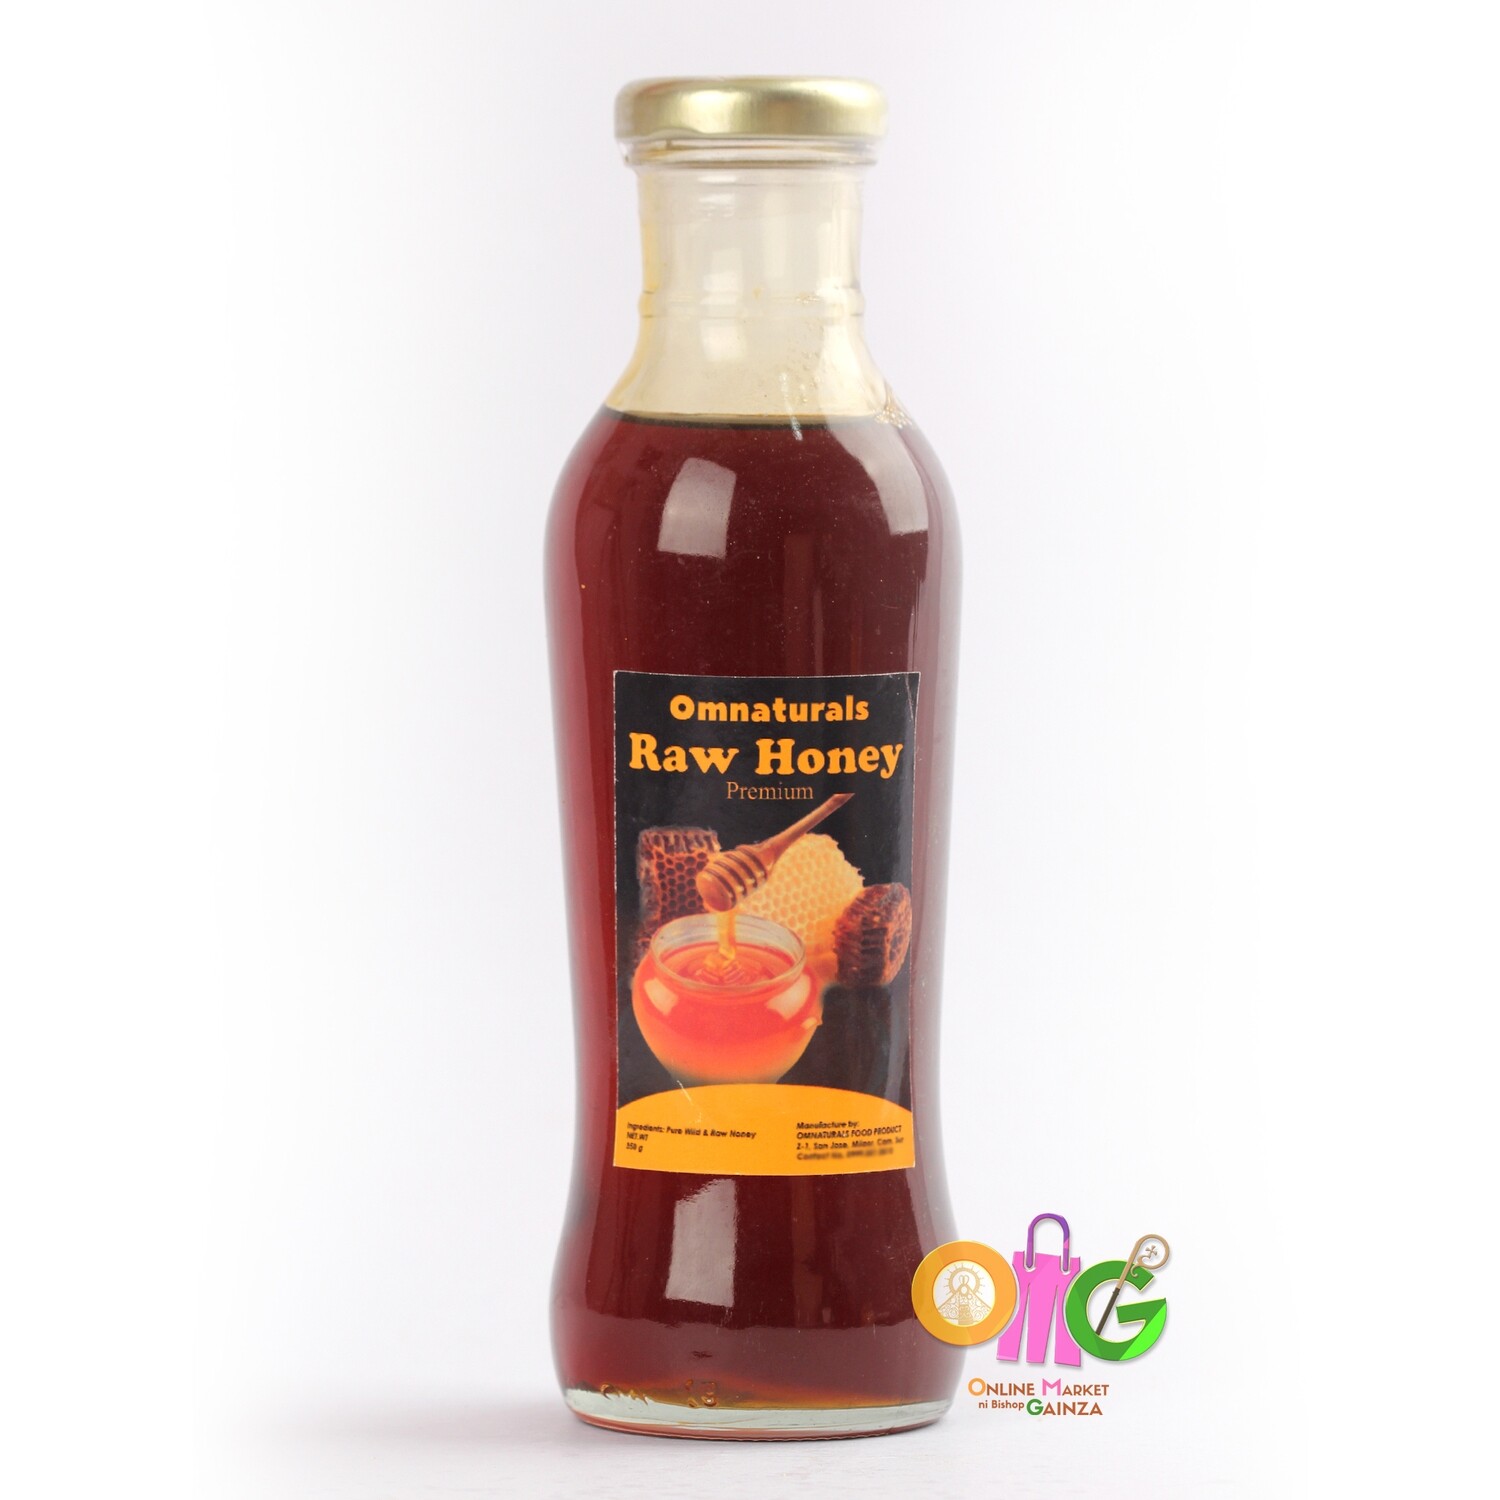 Omnaturals - Raw Honey Premium